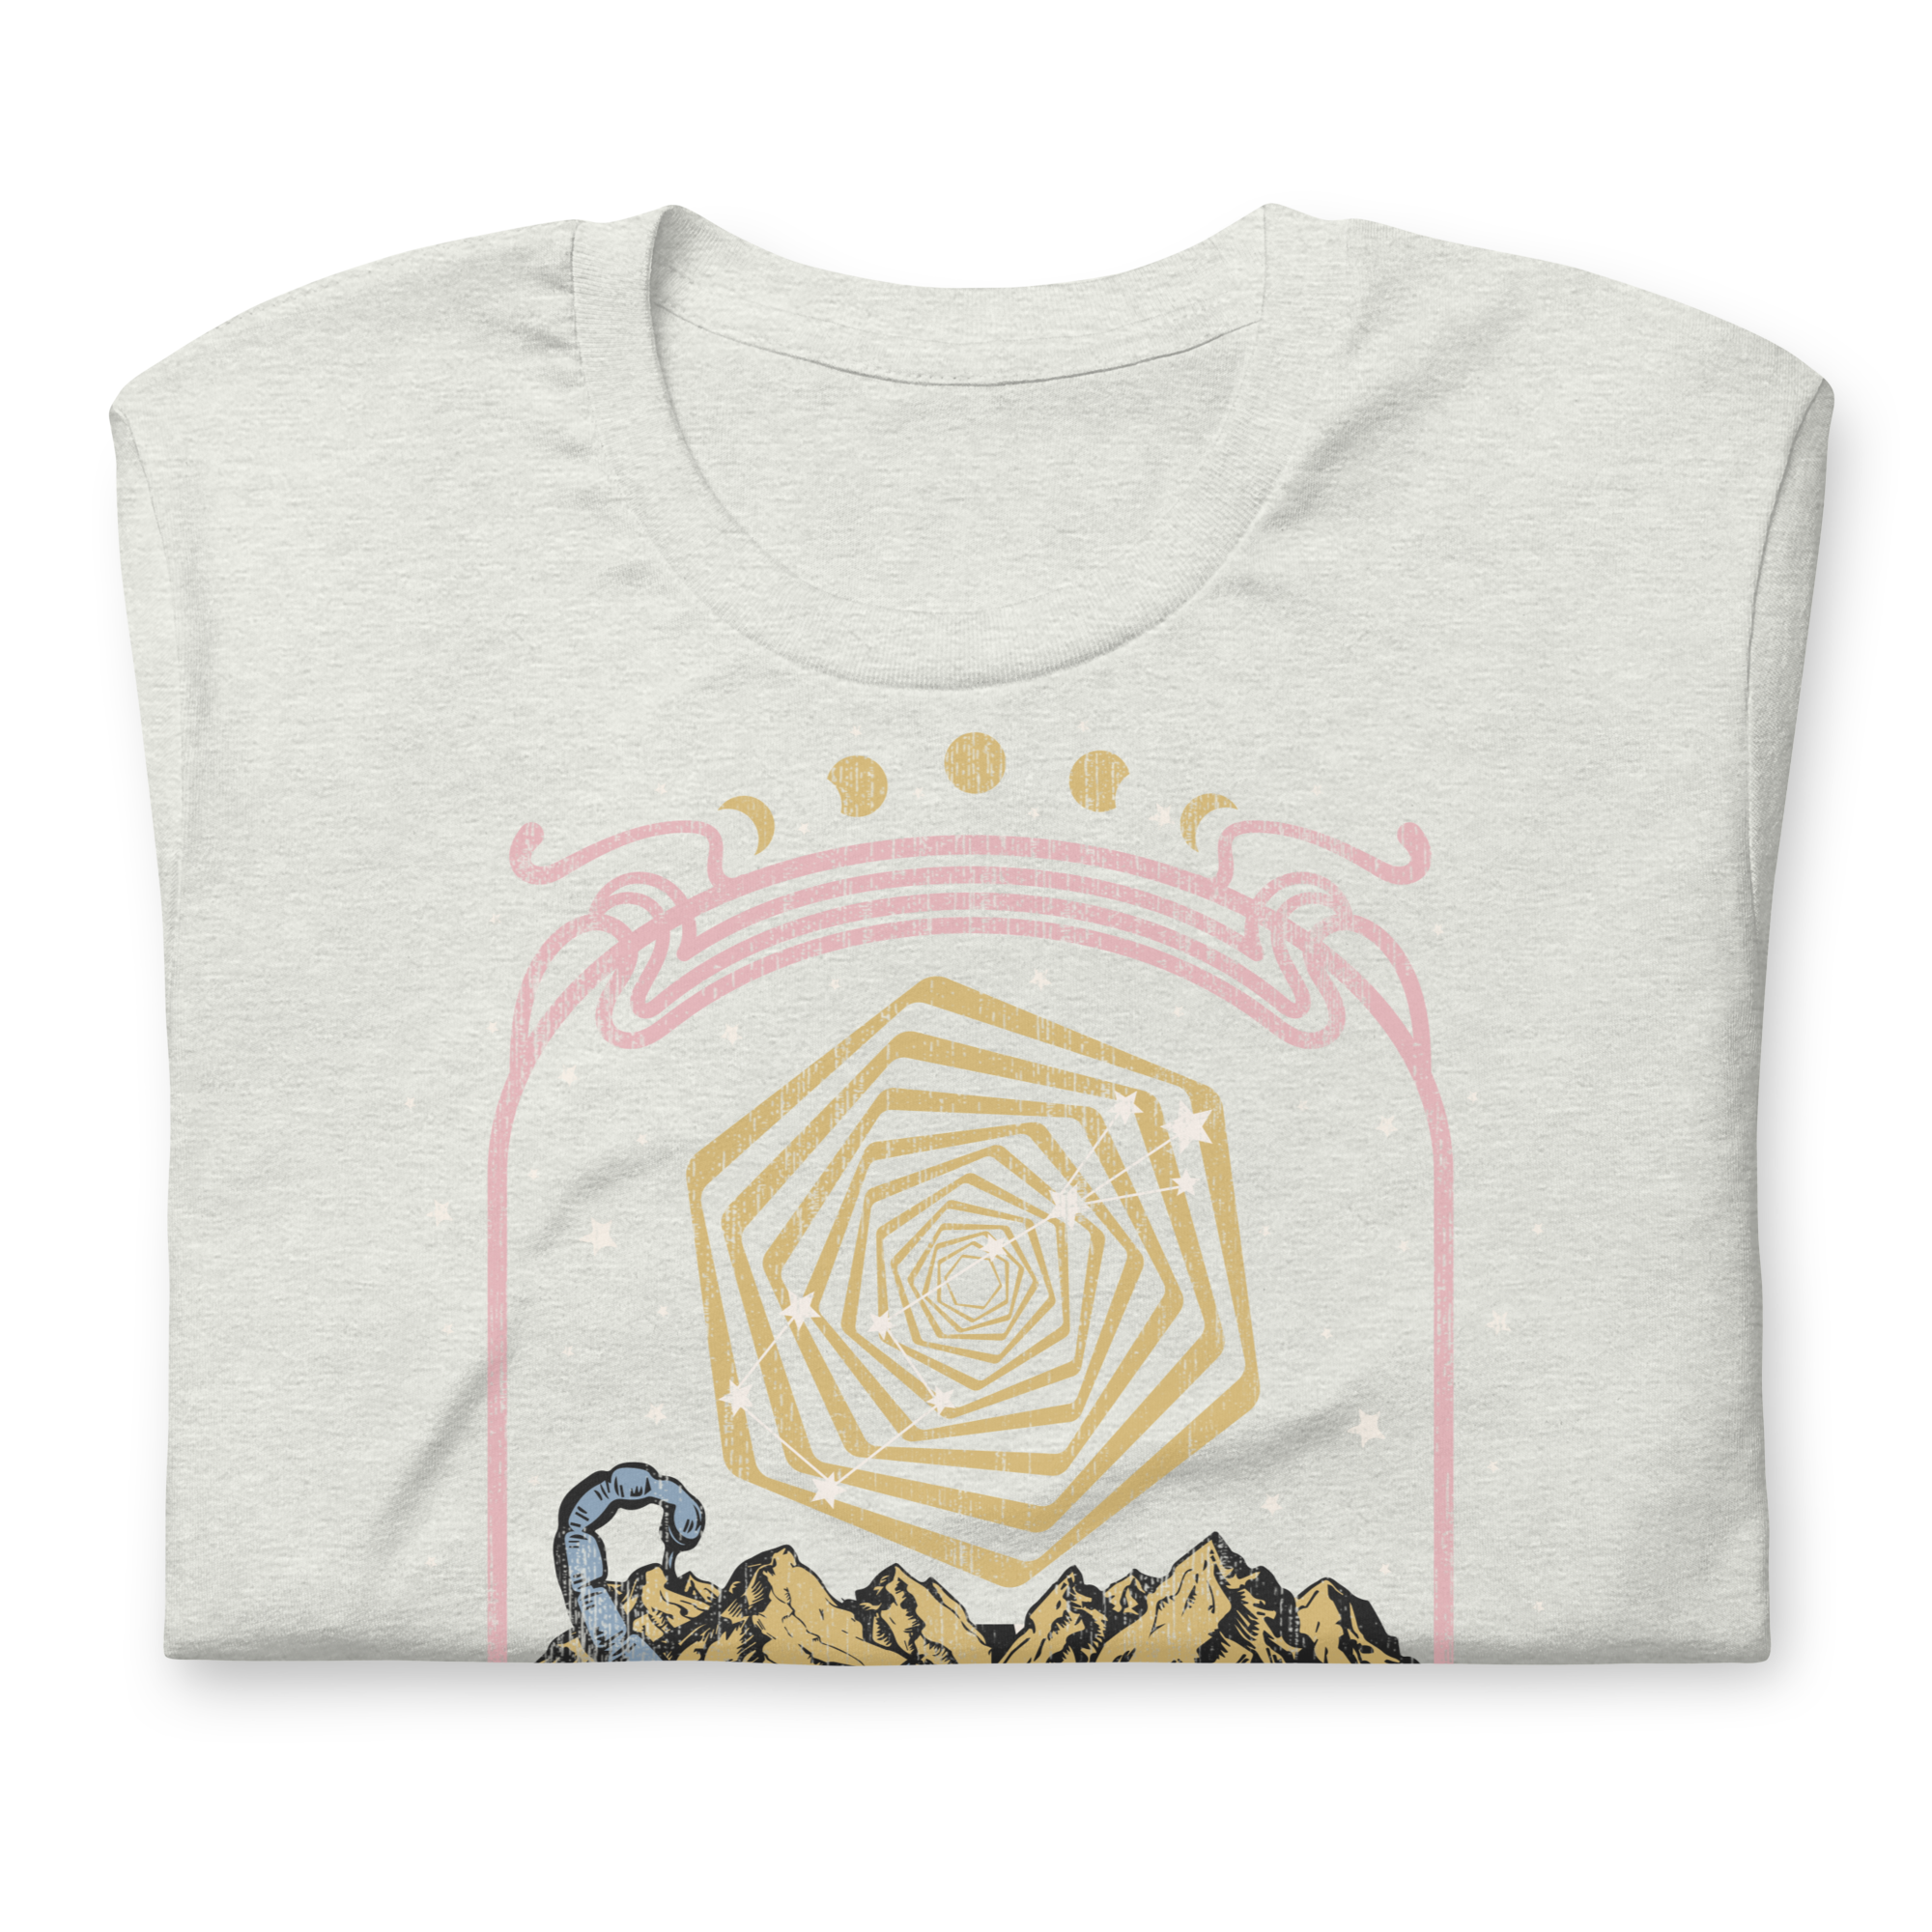 Scorpio Band T-Shirt Inspired Graphic Tee